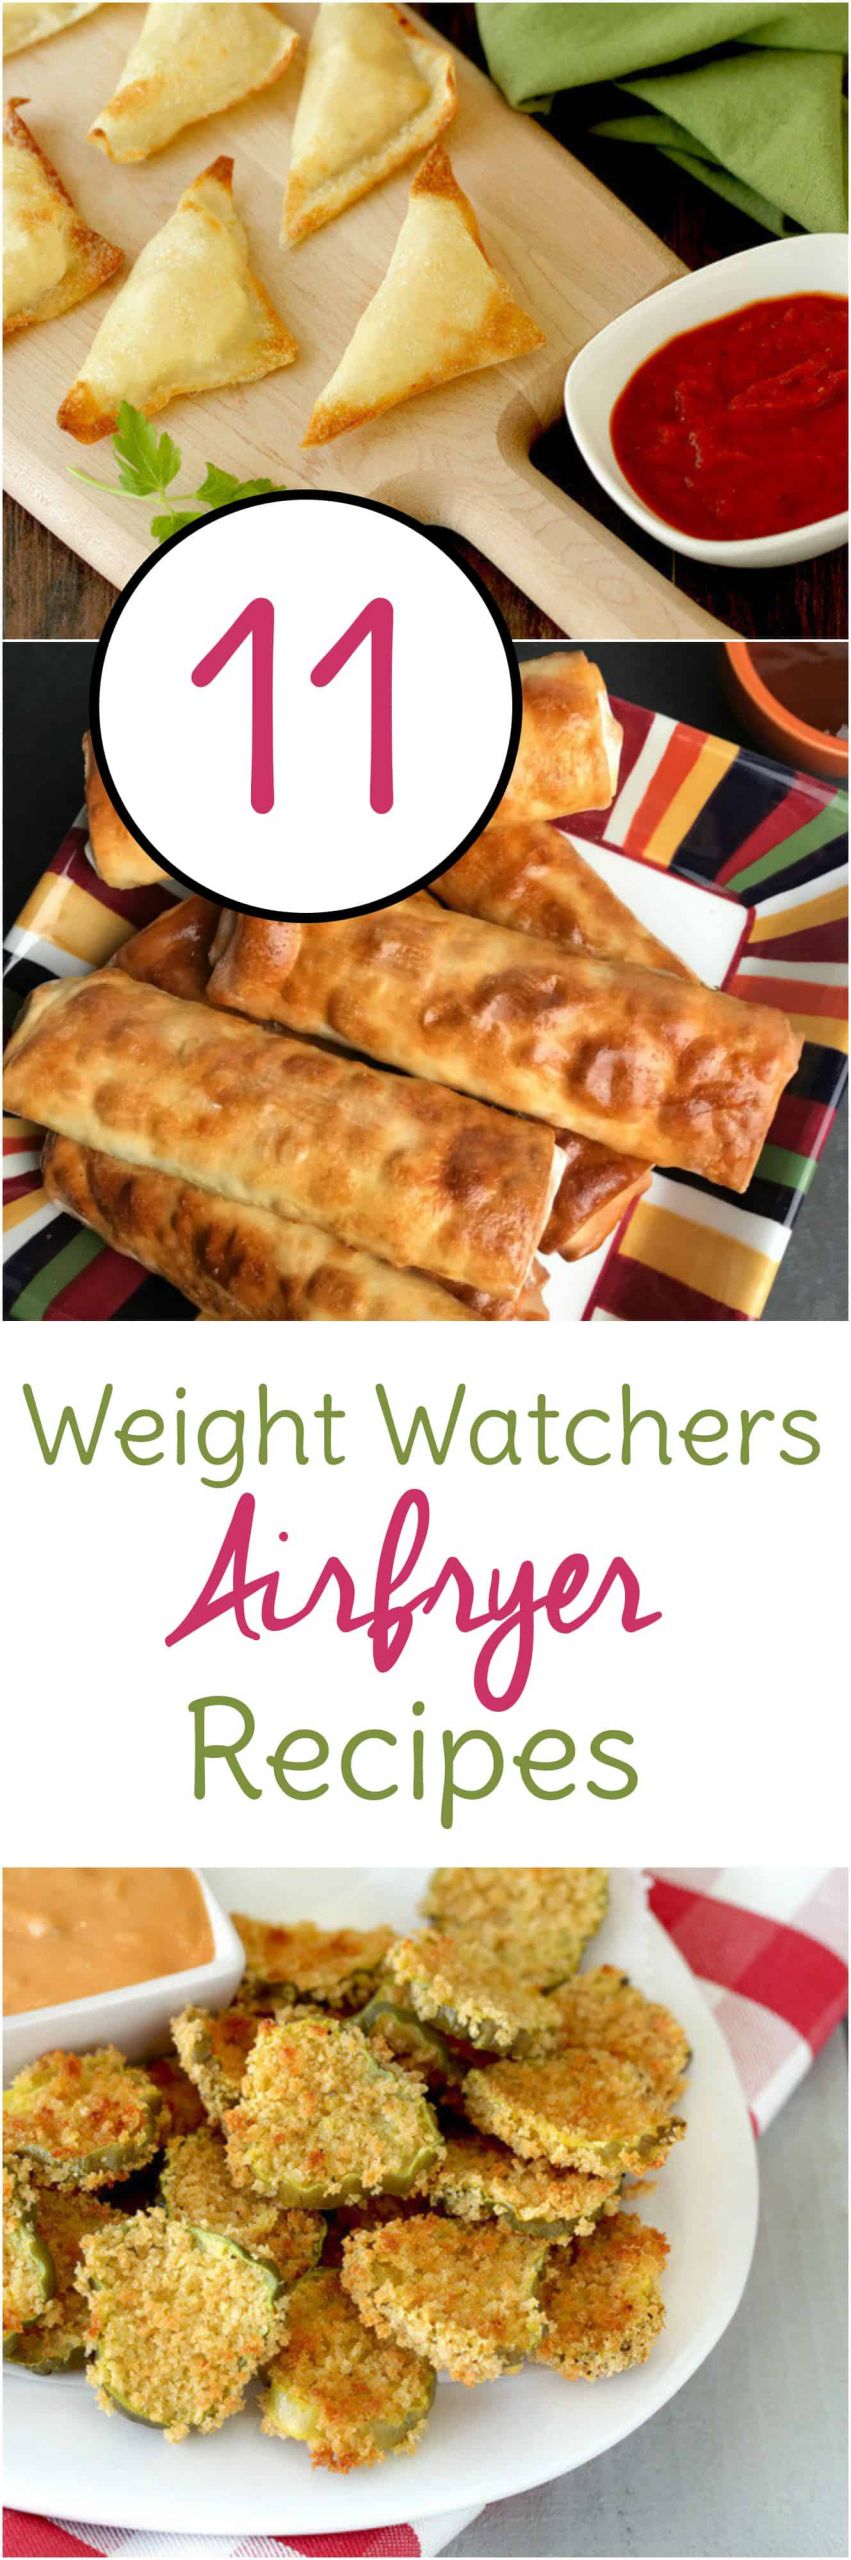 Air Fryer Weight Loss Recipes
 Weight Watchers Air Fryer Recipes 11 Easy Recipes to Try